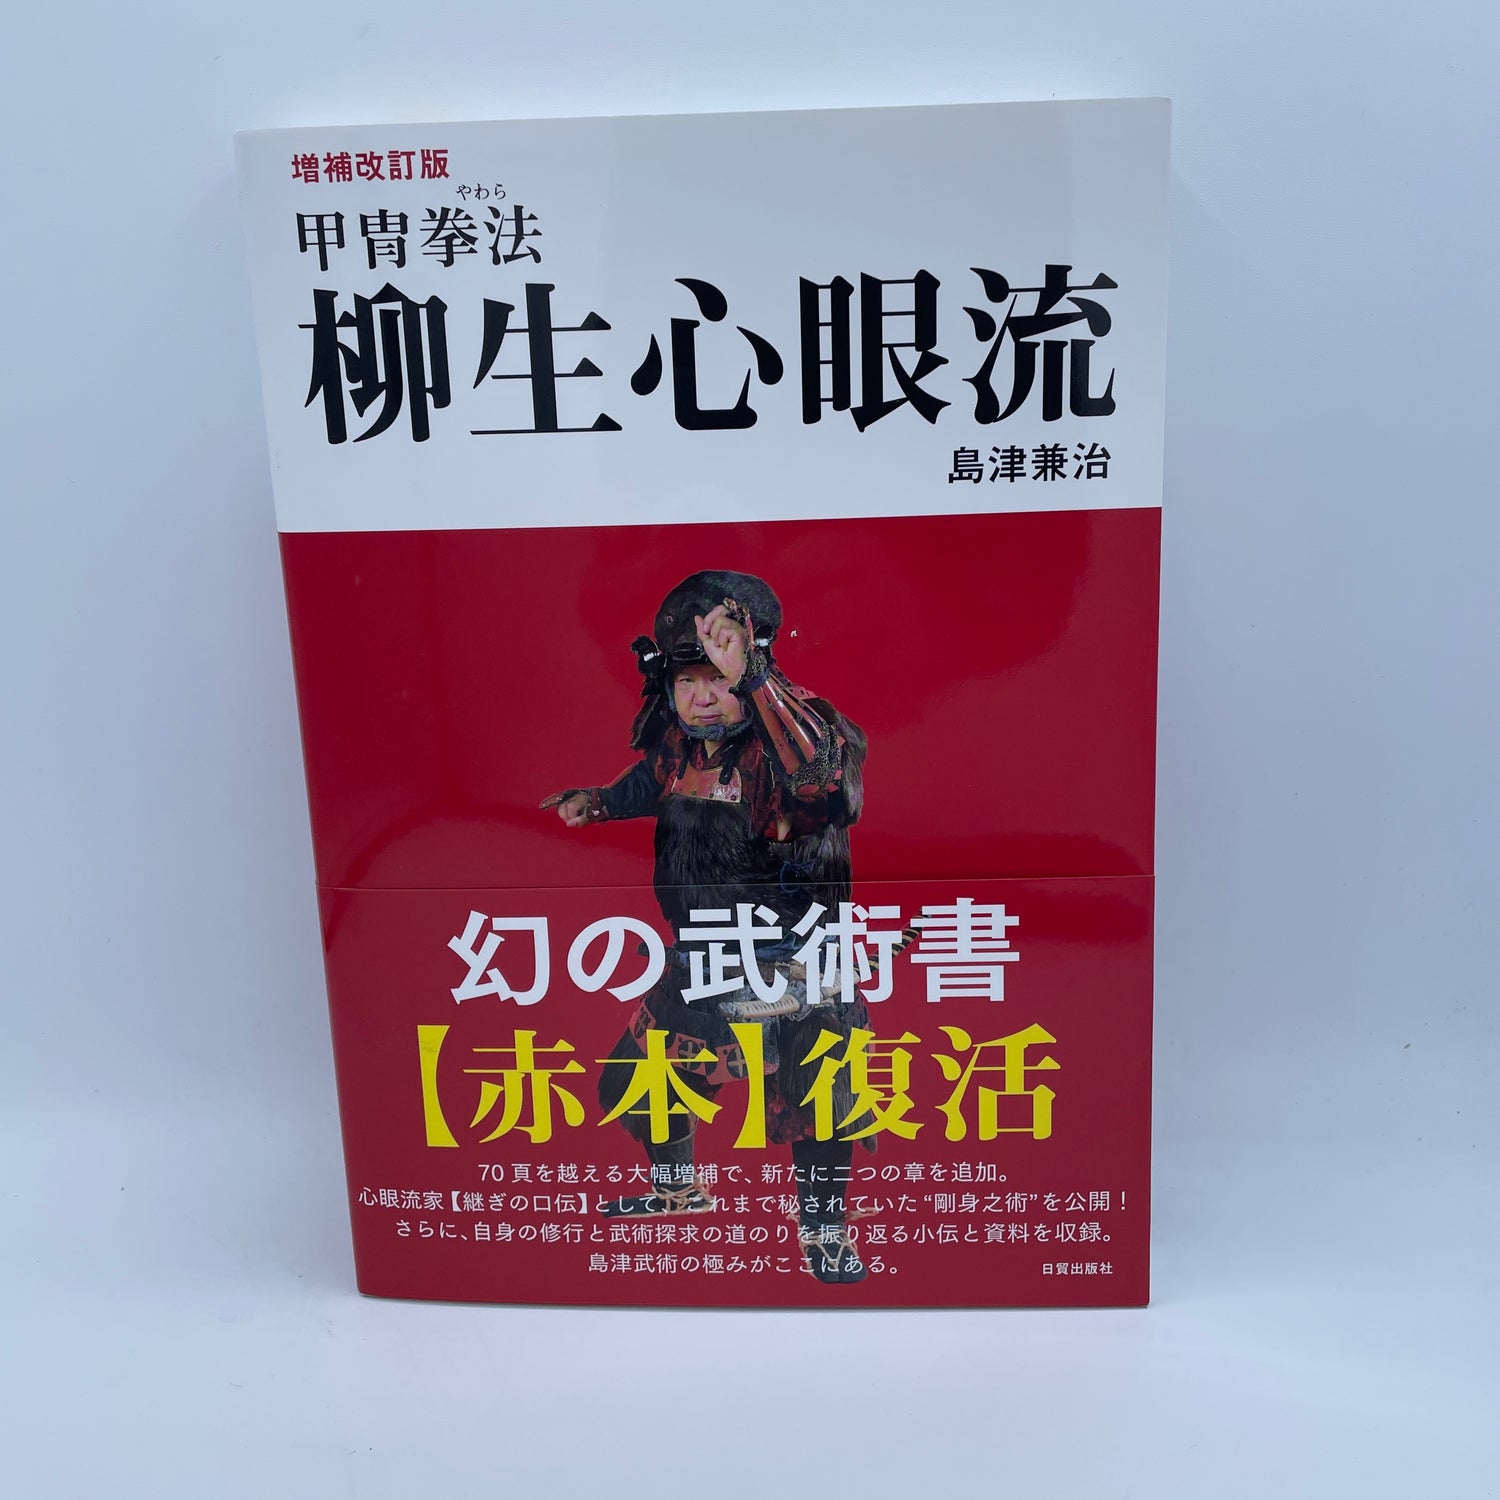 Yagyu Shingan Ryu Book by Kenji Shimazu